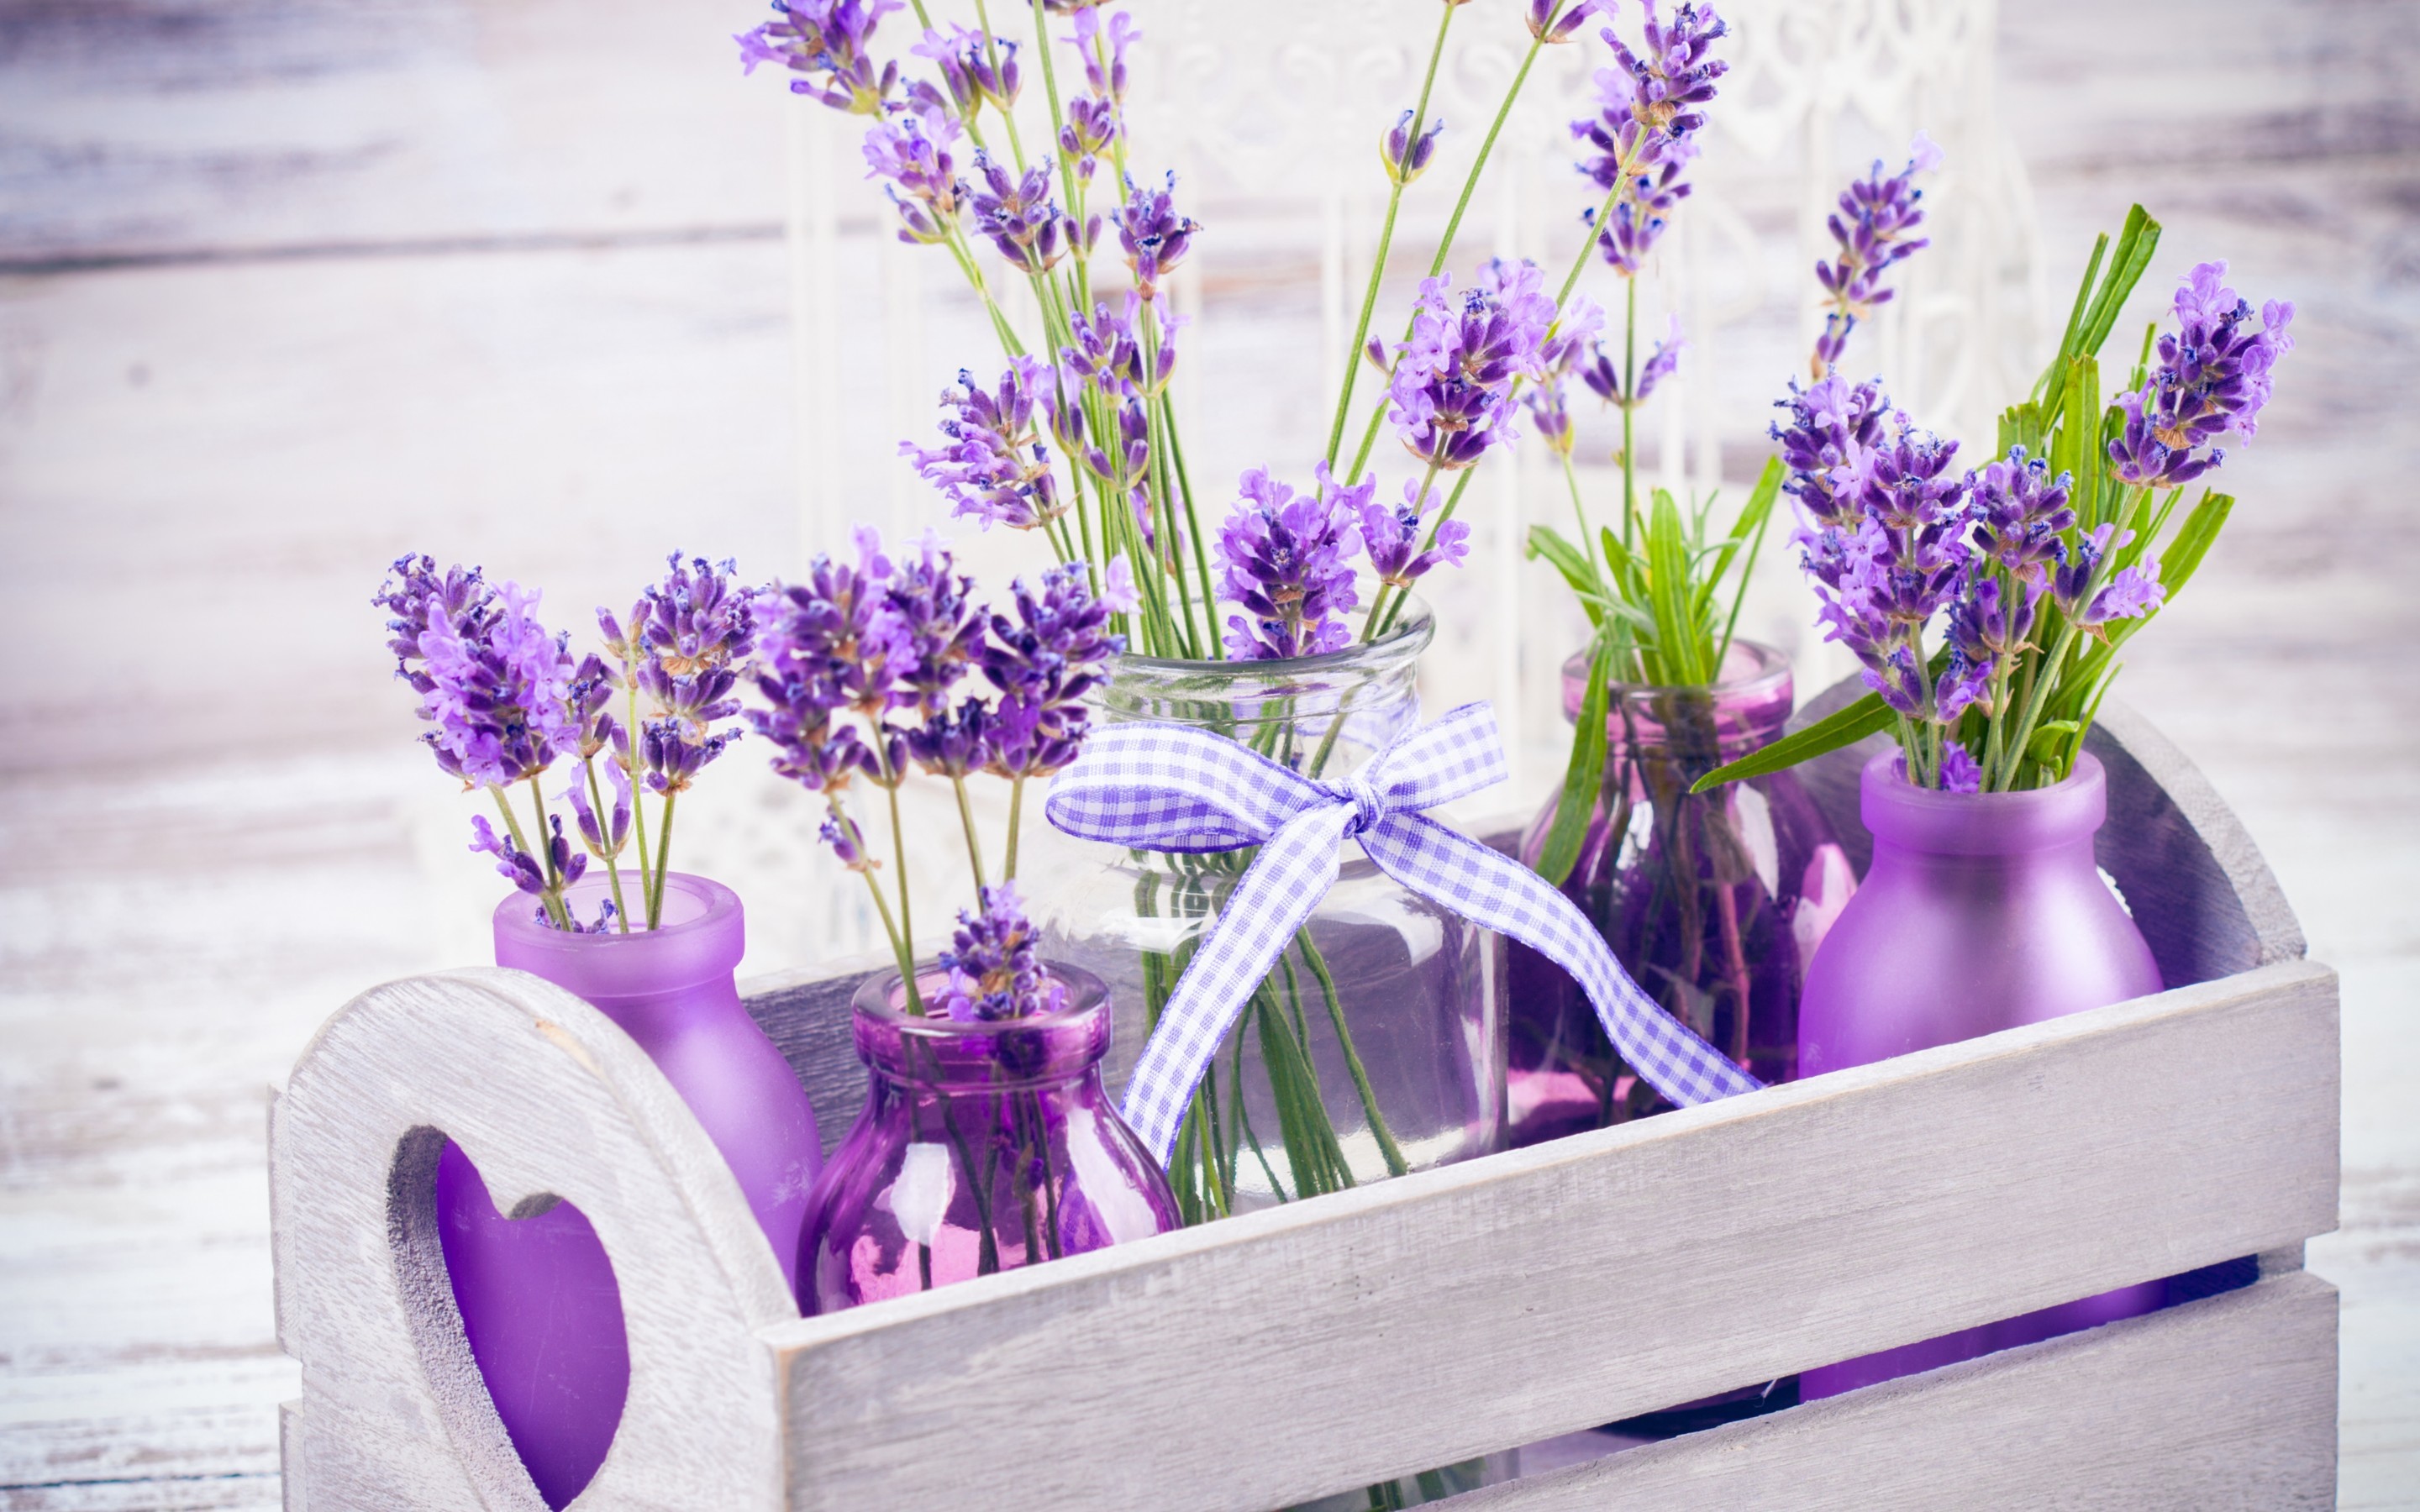 Lavender - tên gọi tiếng anh của hoa oải hương khiến chúng ta liên tưởng đến sự cổ điển và lãng mạn. Với bức ảnh này, bạn sẽ nhận được một món quà tuyệt vời từ Hà Nội - kết hợp giữa vẻ đẹp truyền thống và hiện đại.